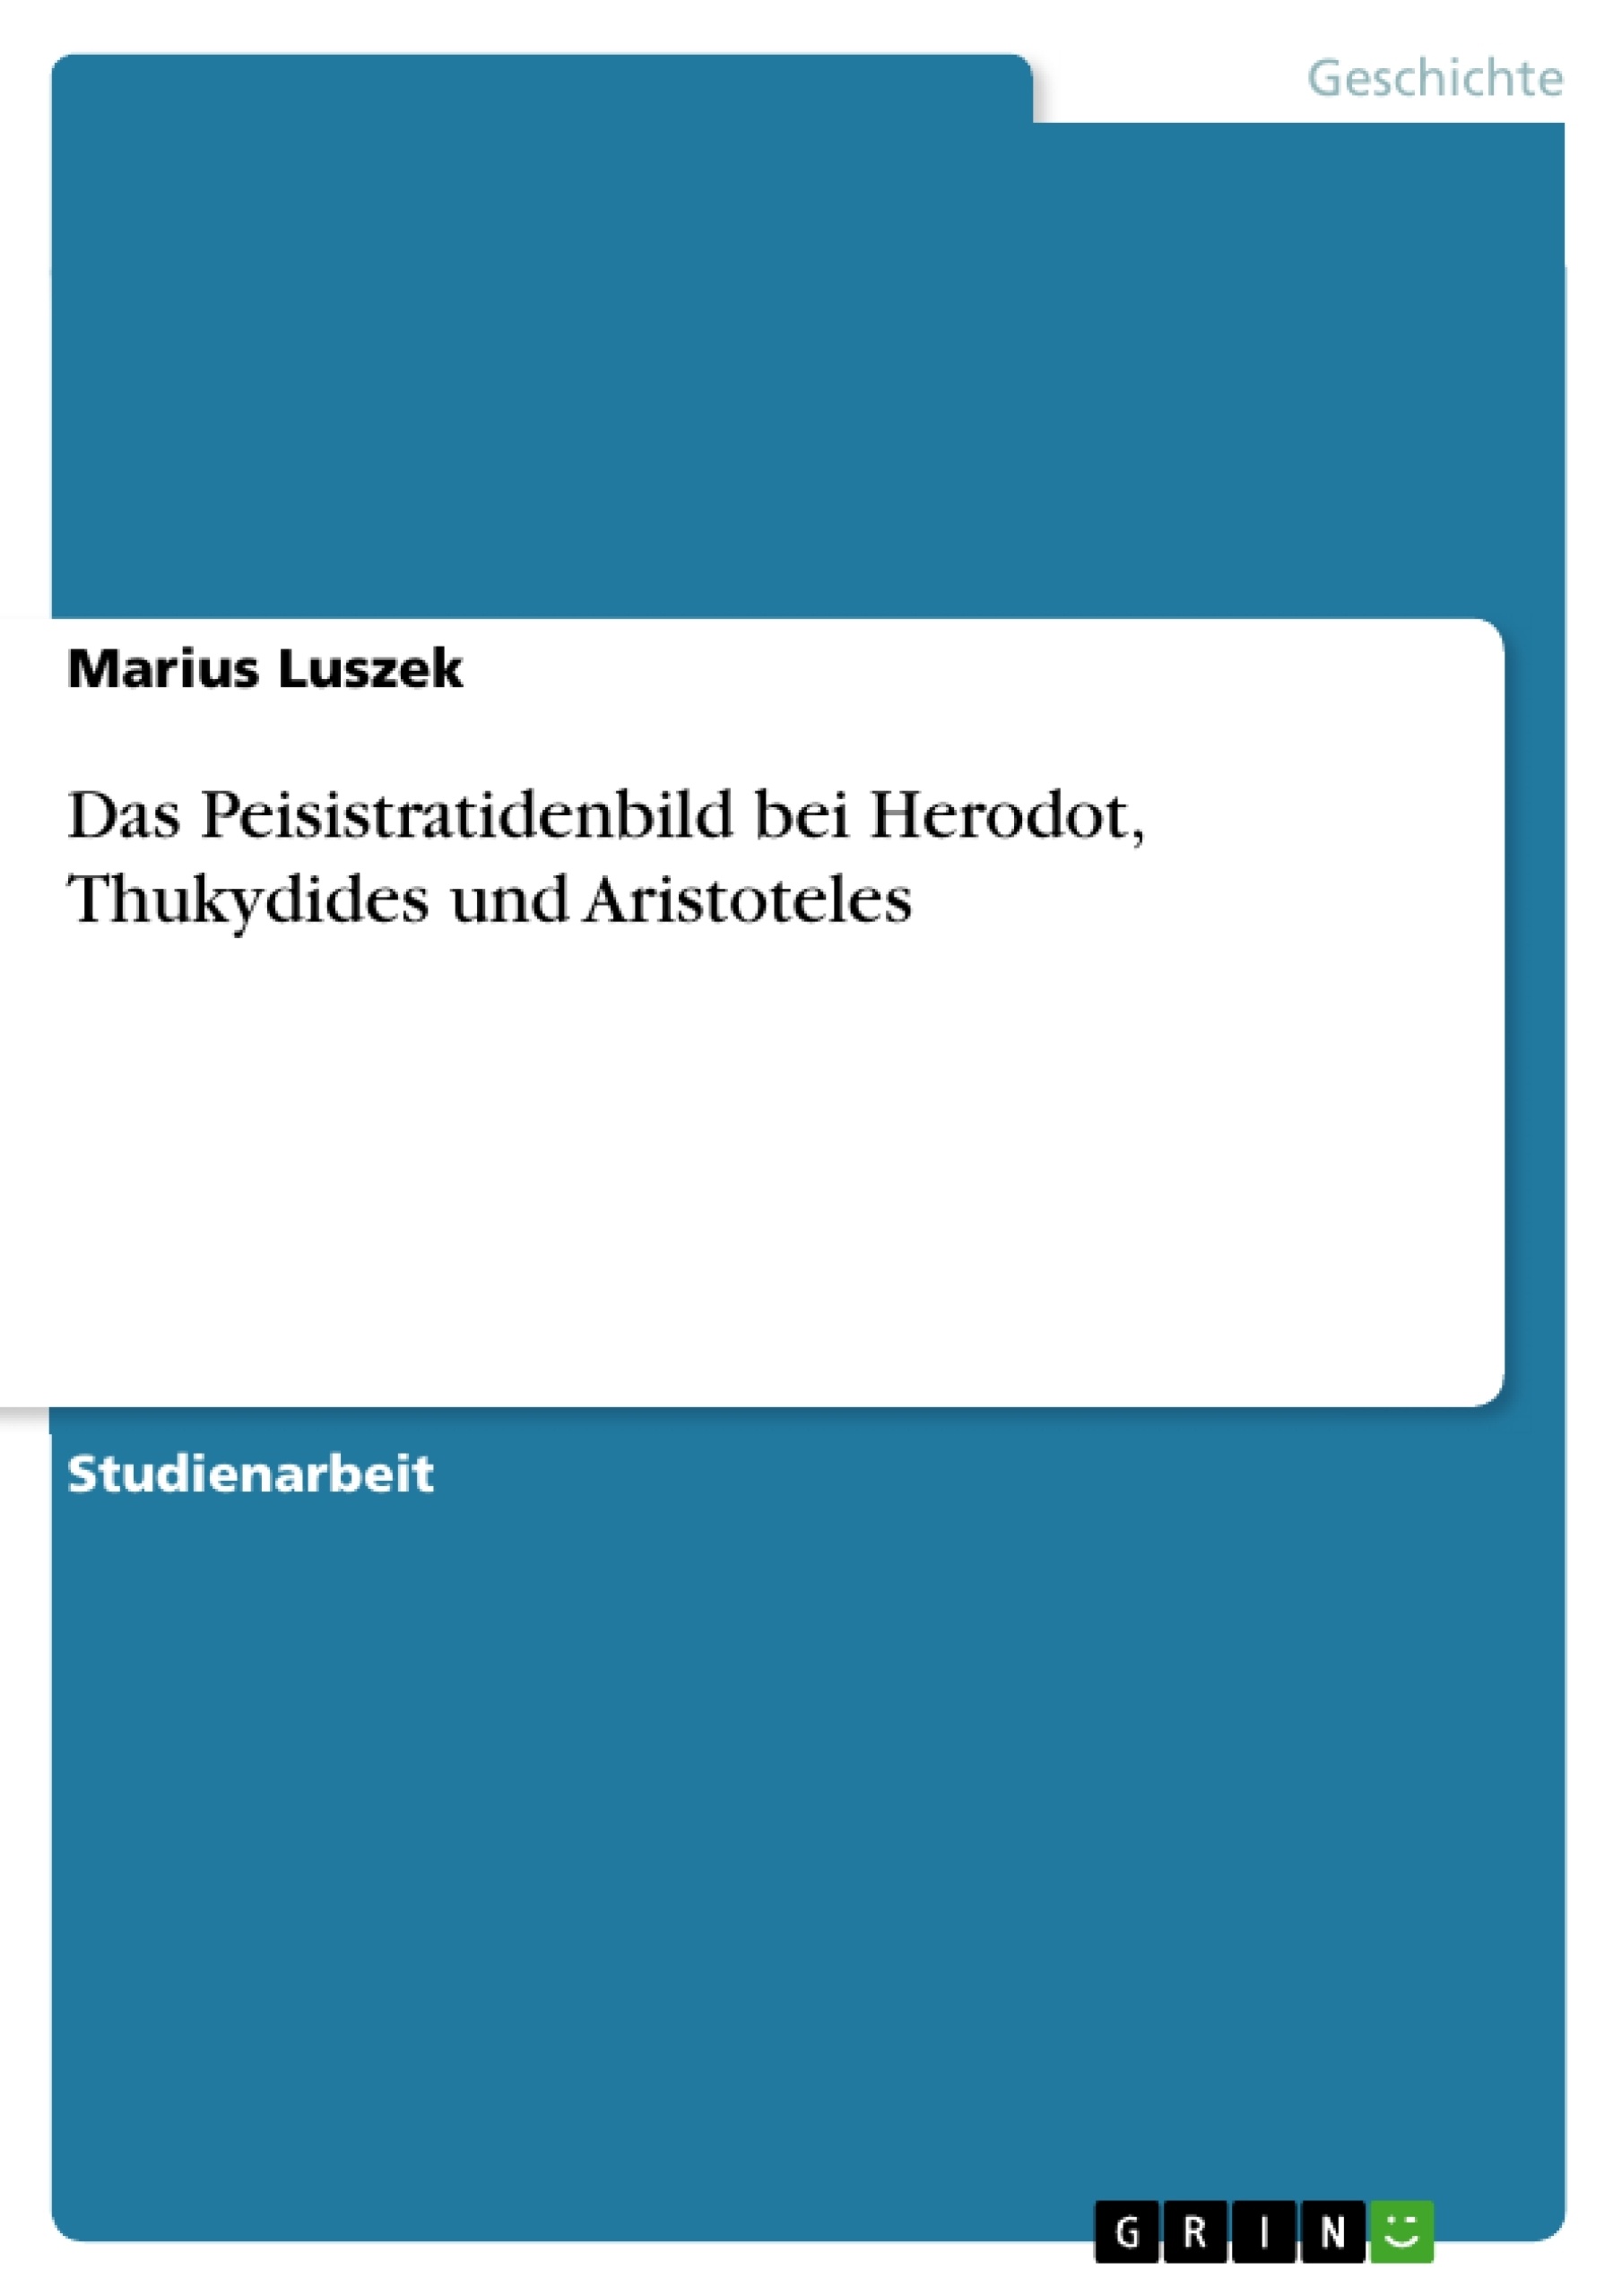 Título: Das Peisistratidenbild bei Herodot, Thukydides und Aristoteles